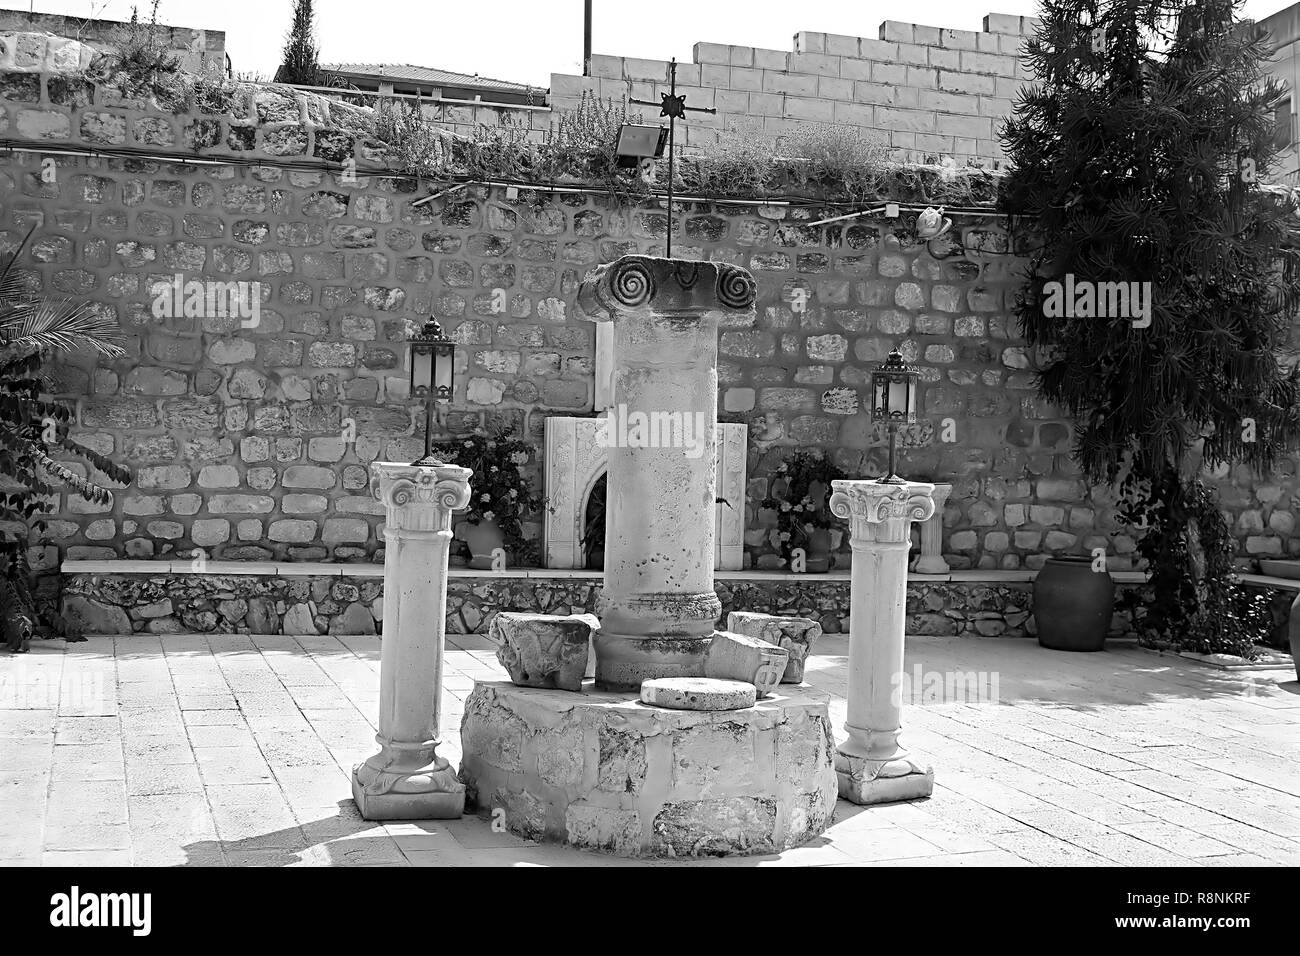 Spalten auf dem Hof des Cana griechische orthodoxe Kirche Hochzeit in Kana in Galiläa, Kfar Kana, Israel. Schwarz-weiß-Filter Stockfoto